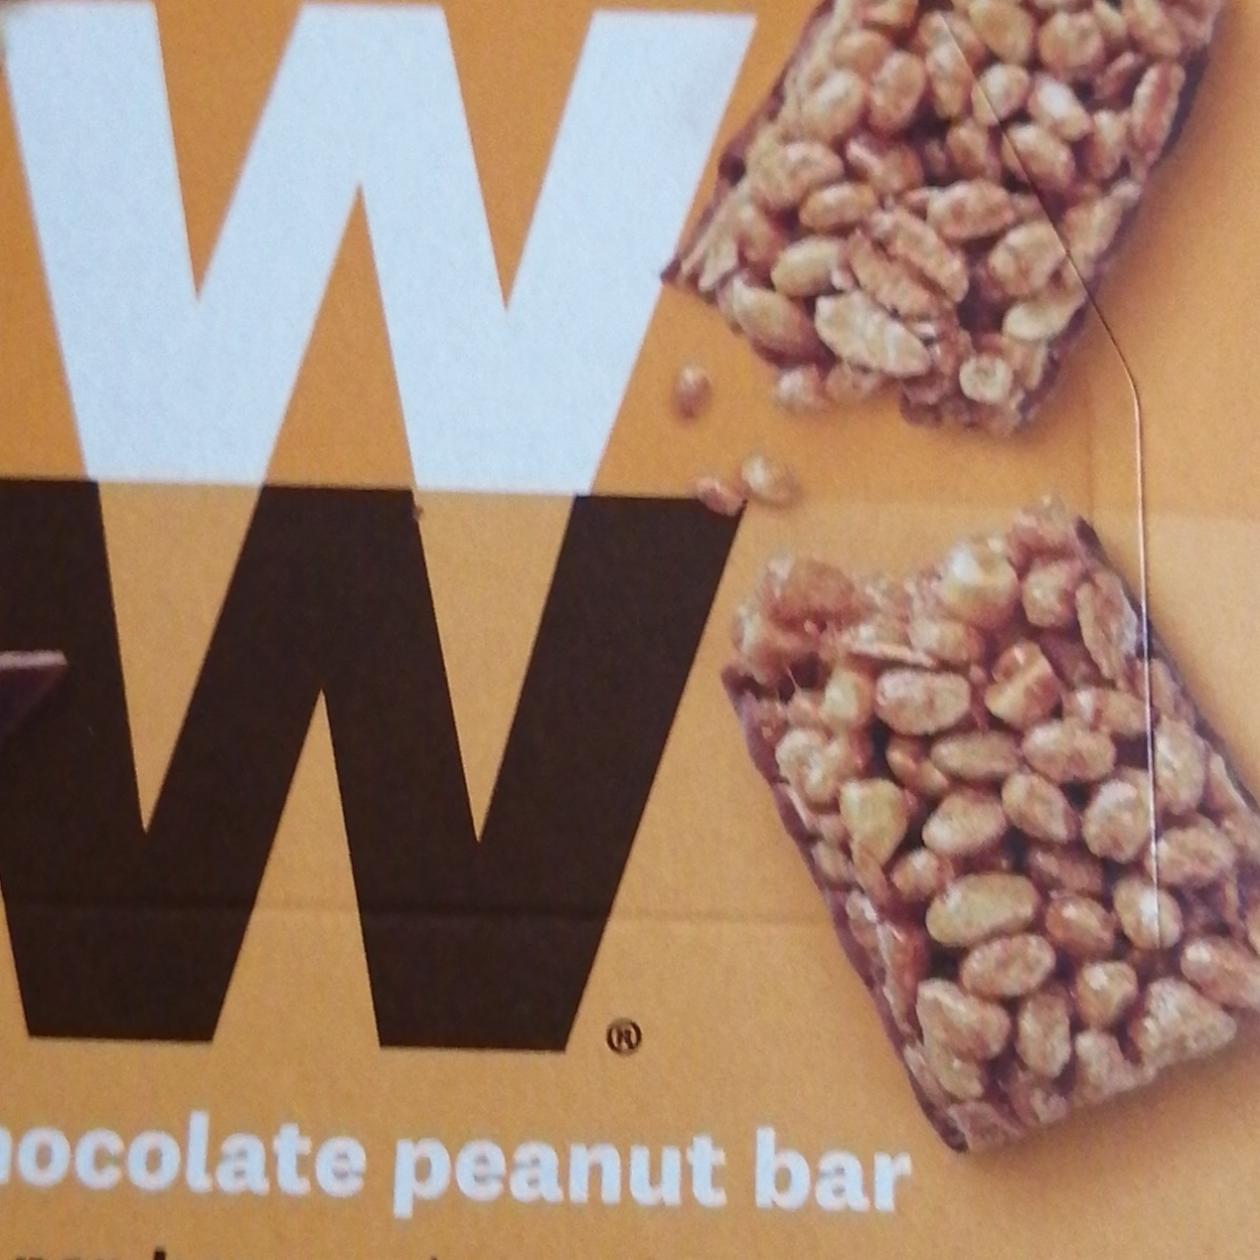 Fotografie - WW milk chocolate peanut bar